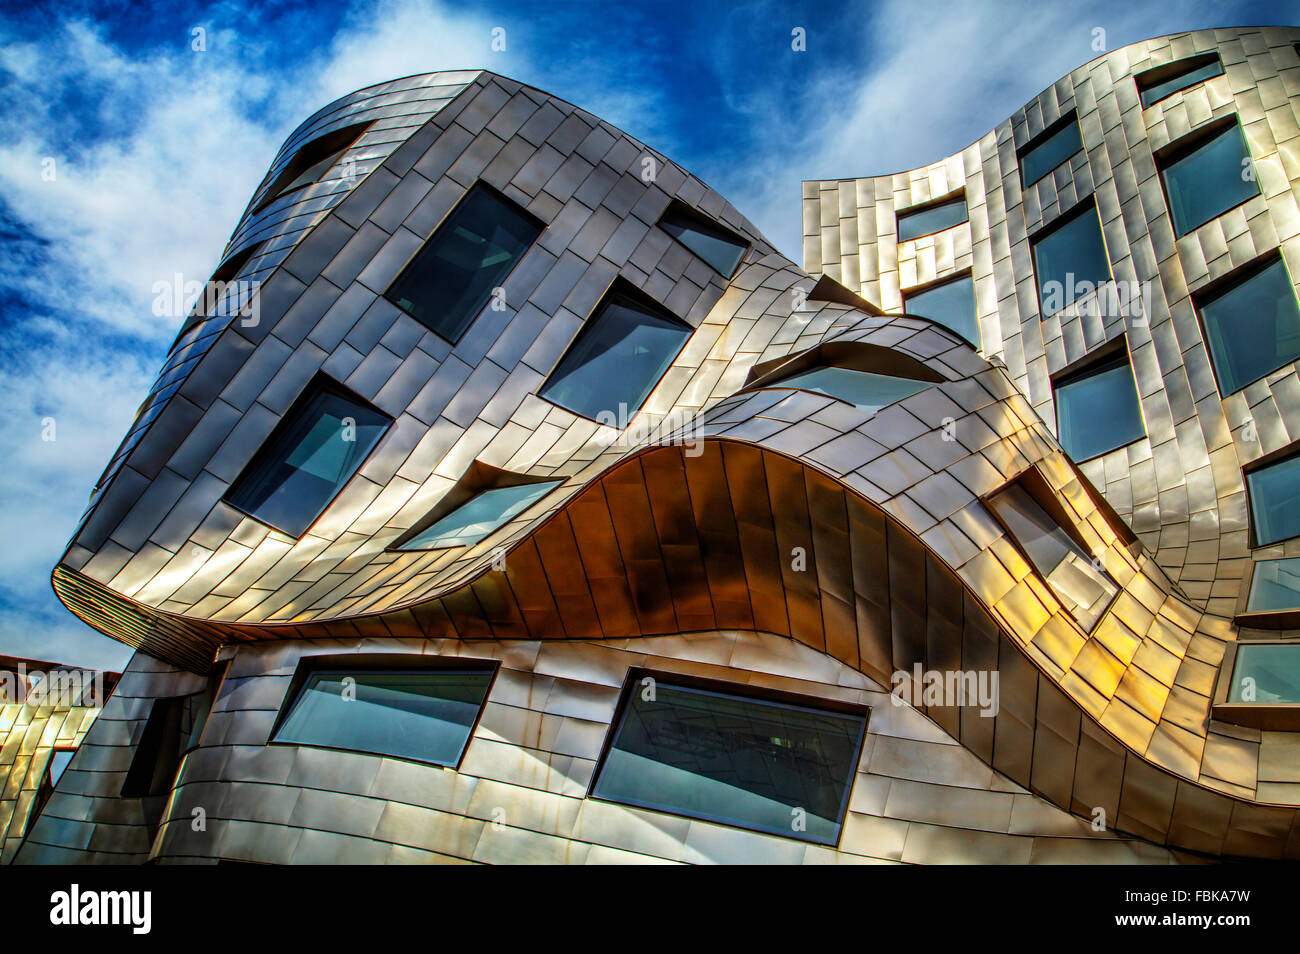 Cleveland Clinic Lou Ruvo centro de salud cerebral, el arquitecto Frank Gehry, inaugurado el 21 de mayo de 2010 en Las Vegas, Nevada. Foto de stock